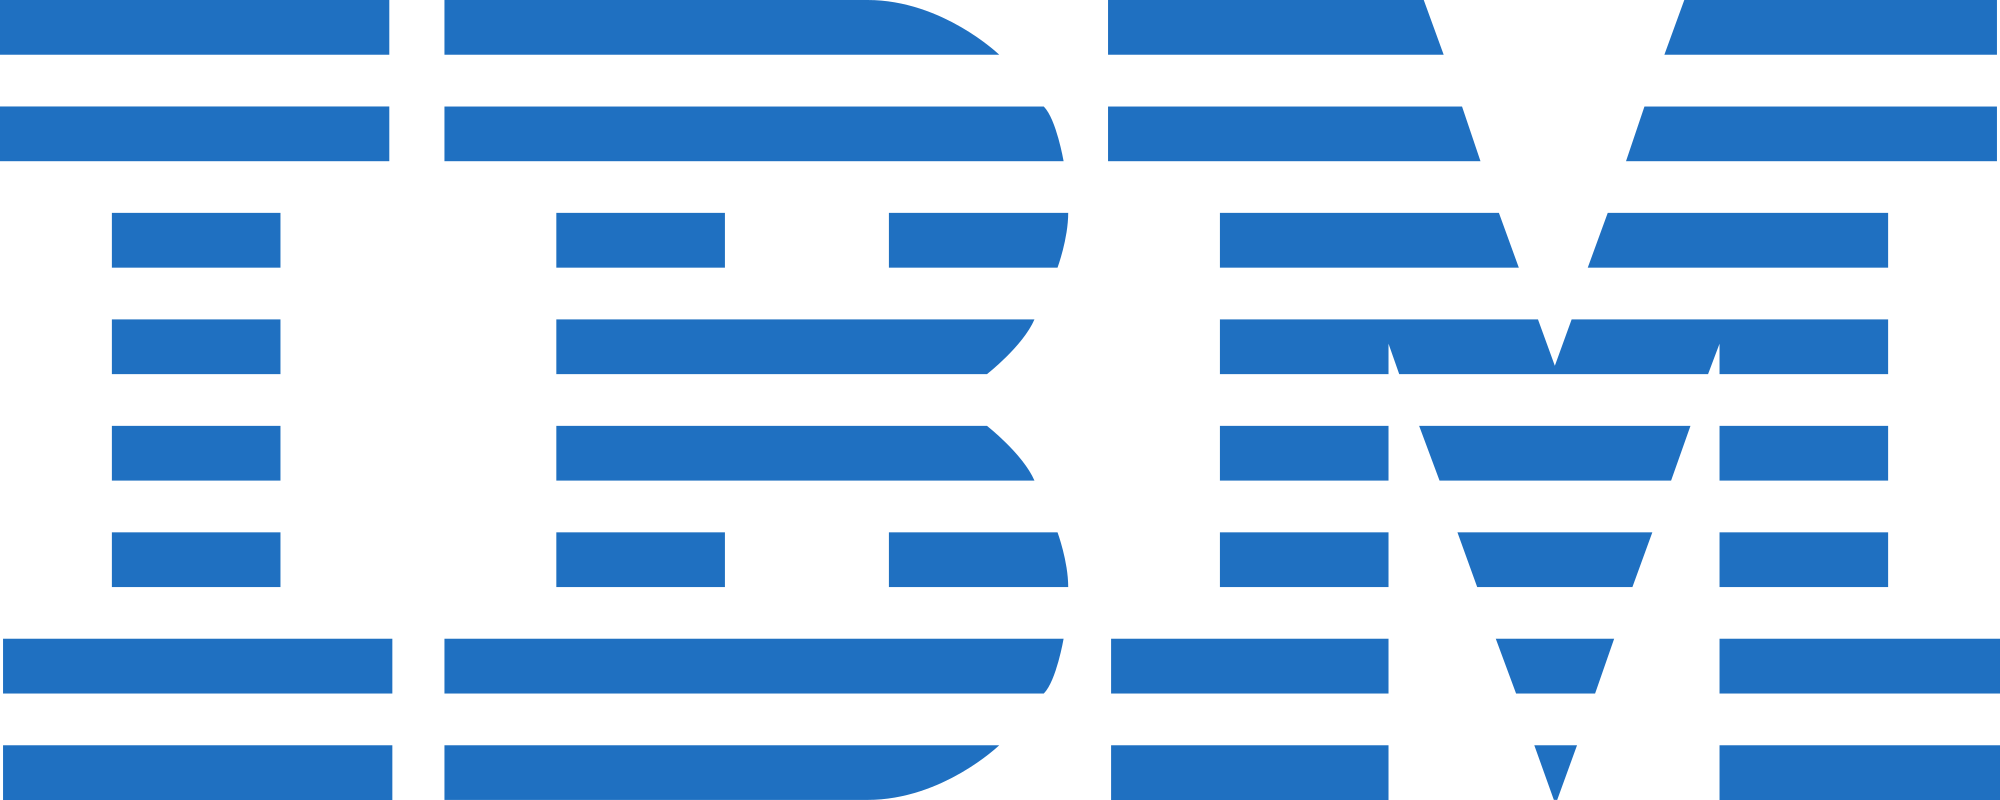 Logo Ibm PNG - 98714